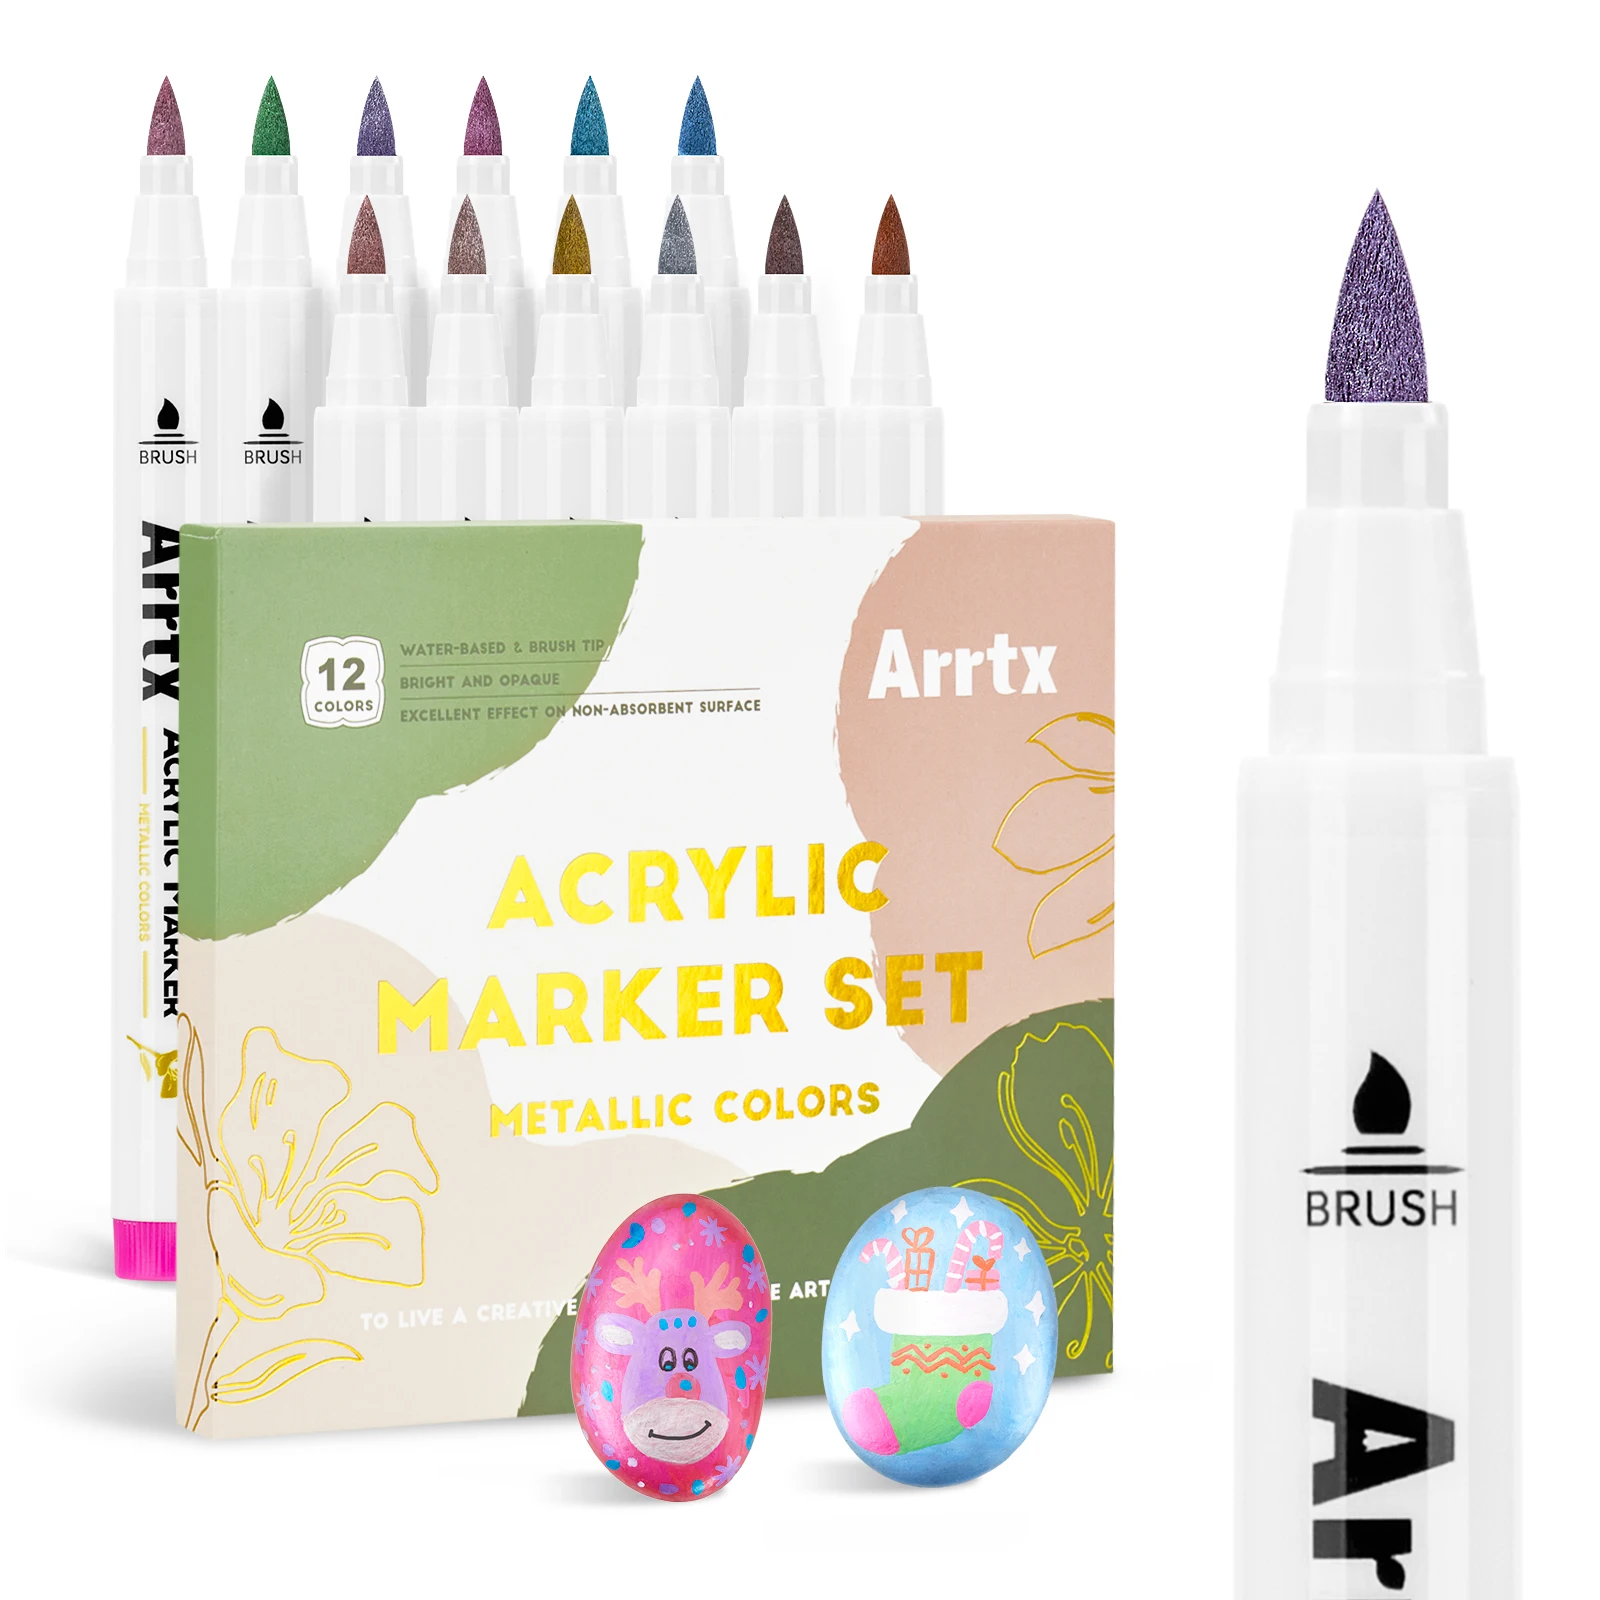 Arrtx 12 Металлических цветов Акриловый маркер, мягкий наконечник кисти Металлические акриловые краски Ручки для рисования Художественные принадлежности